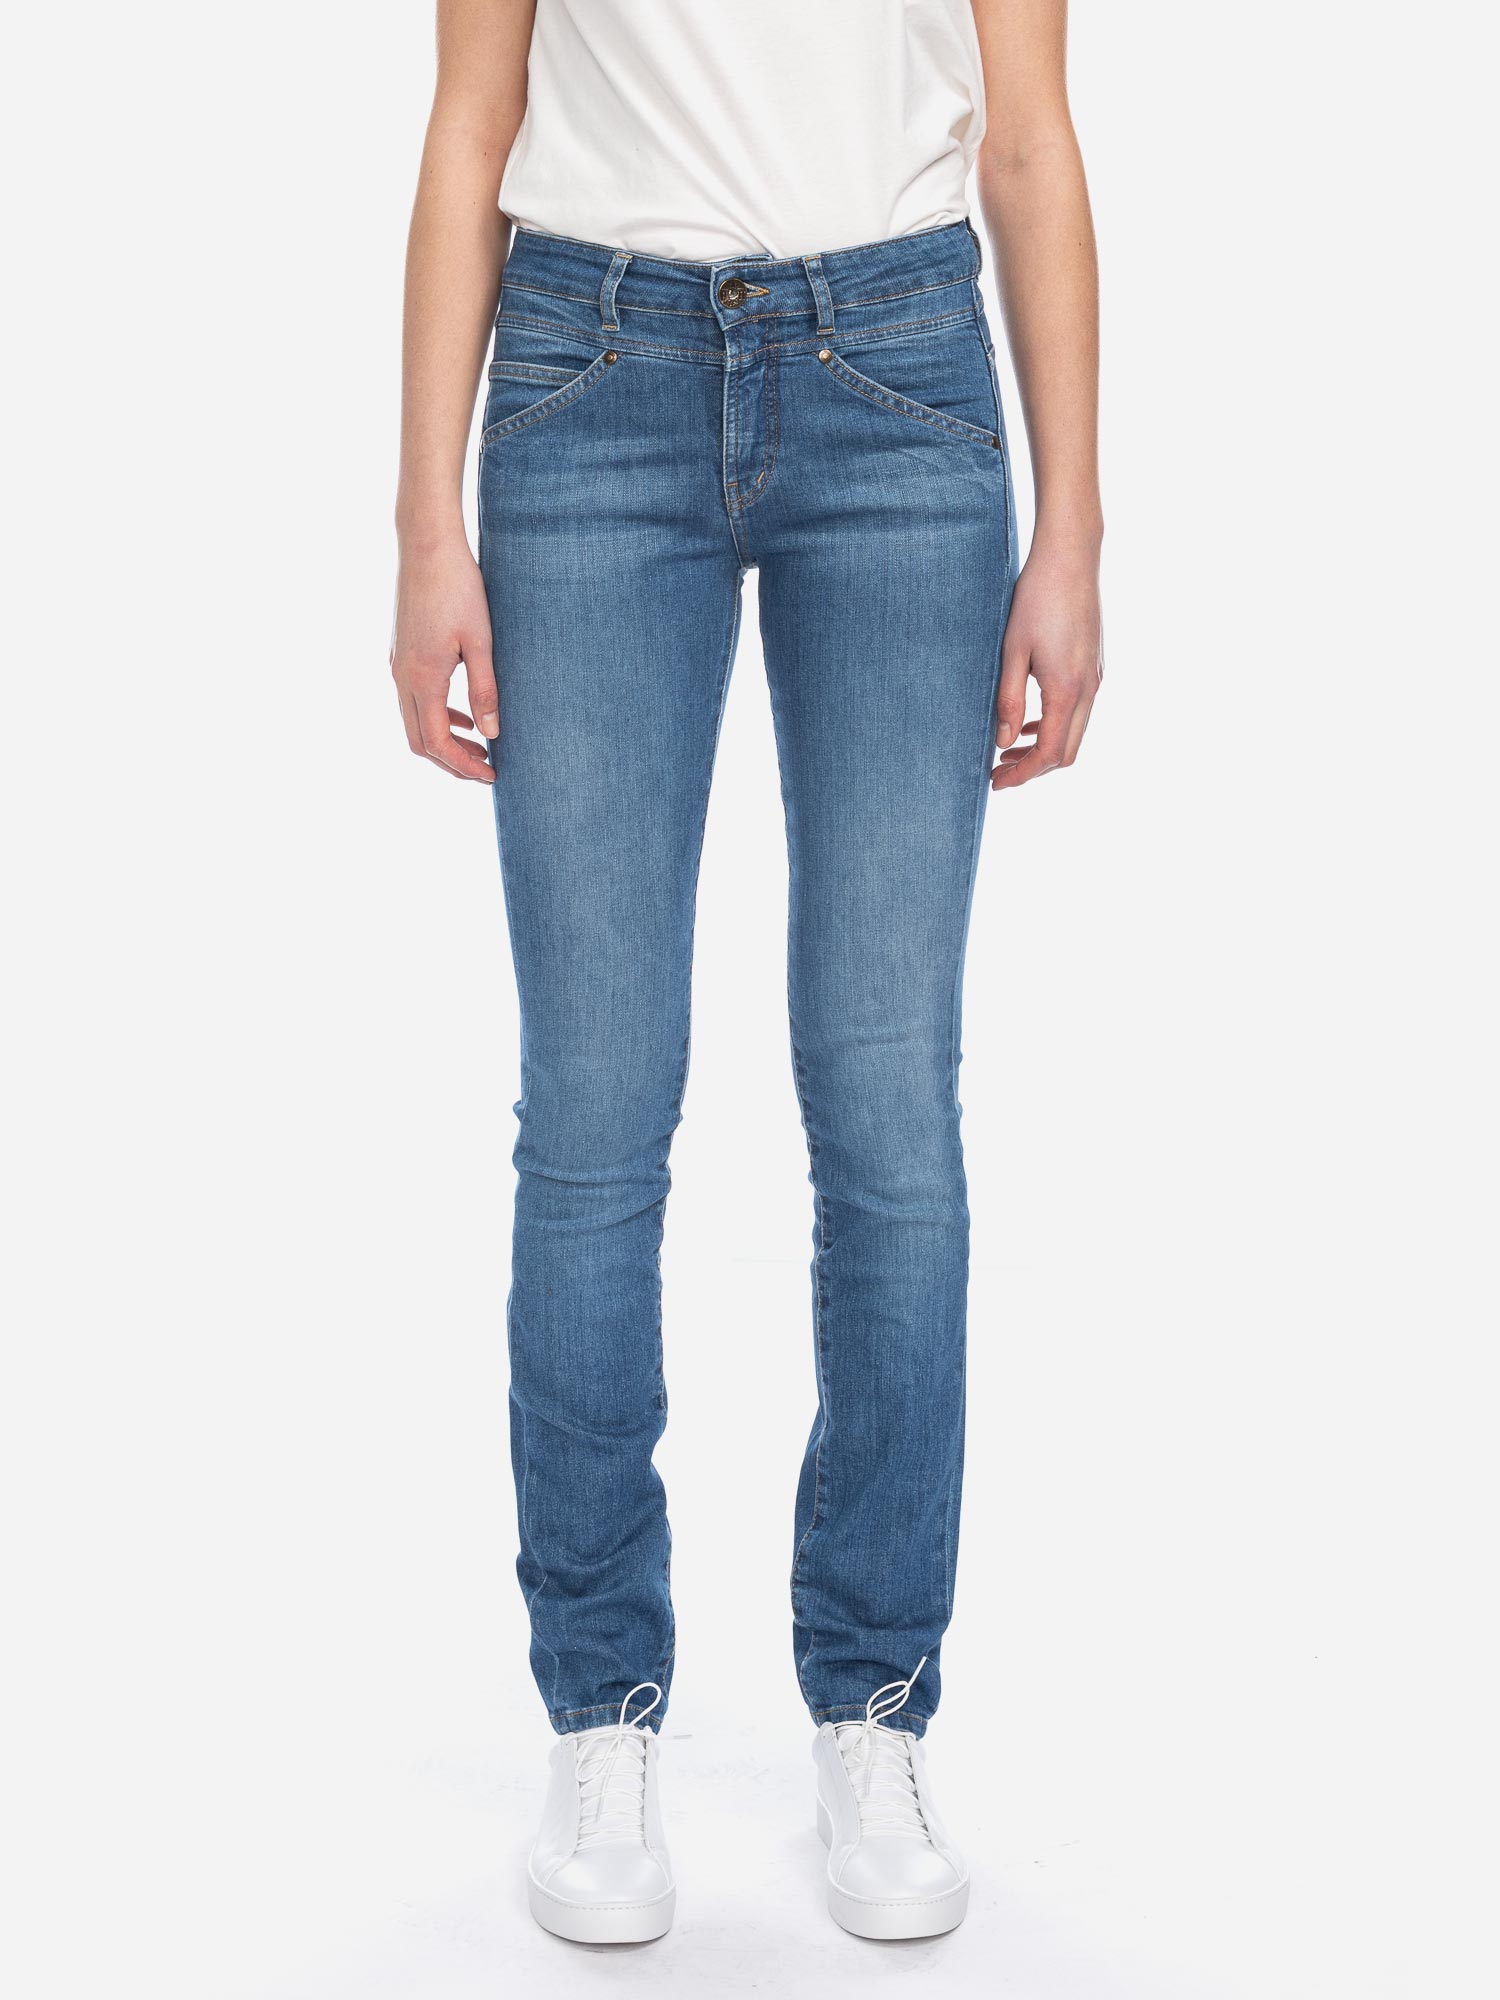 Jeans Kandy GOTS KR8855 BL USD